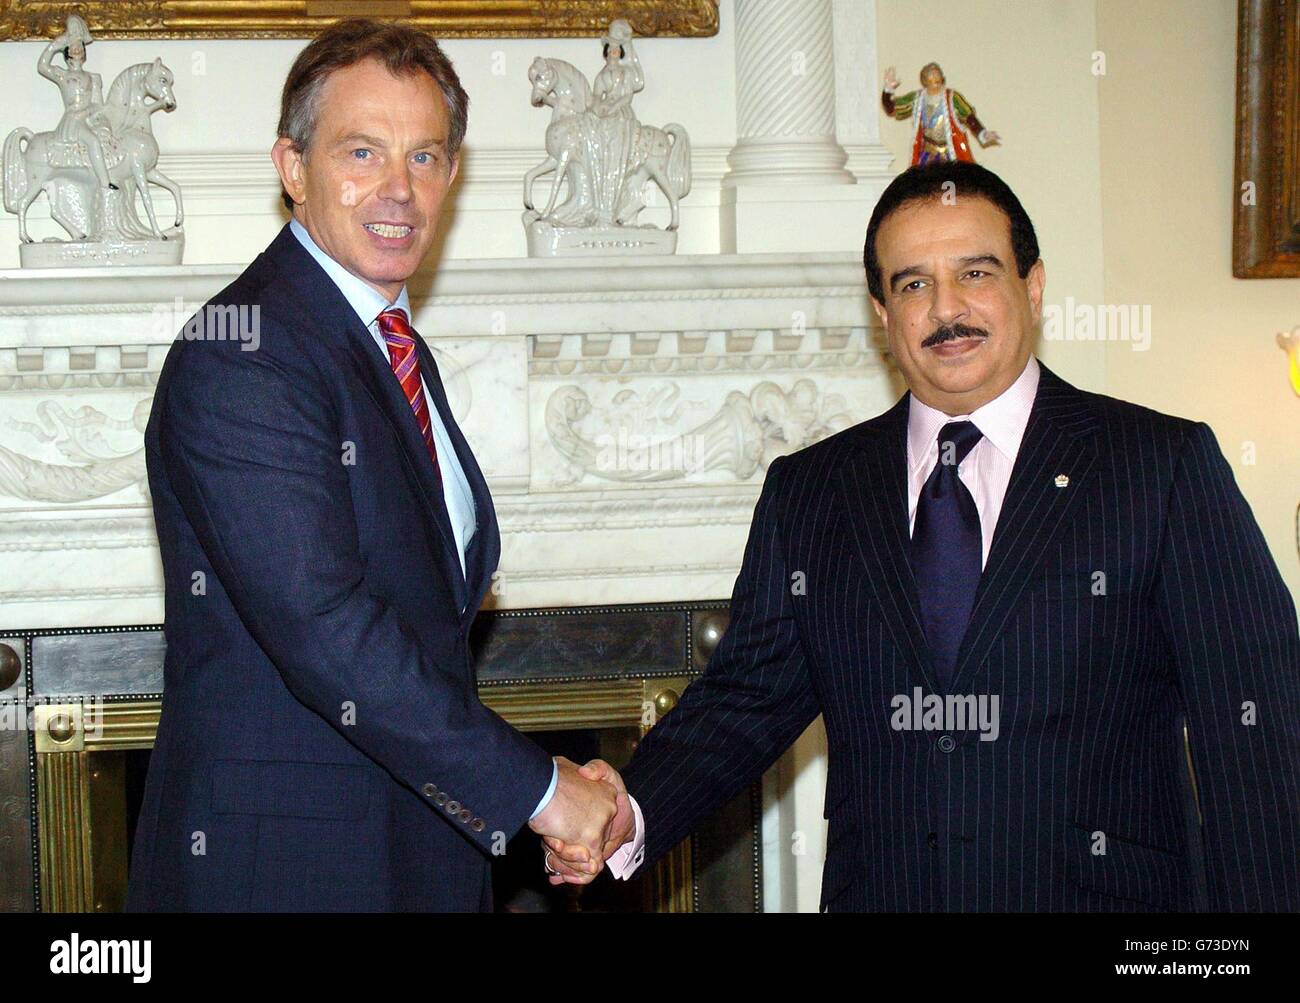 Sheikh Hamad bin Isa al Khalifa, il re del Bahrain, a destra, incontra il primo ministro britannico Tony Blair nella sua residenza ufficiale, 10 Downing Street nel centro di Londra per colloqui. Foto Stock